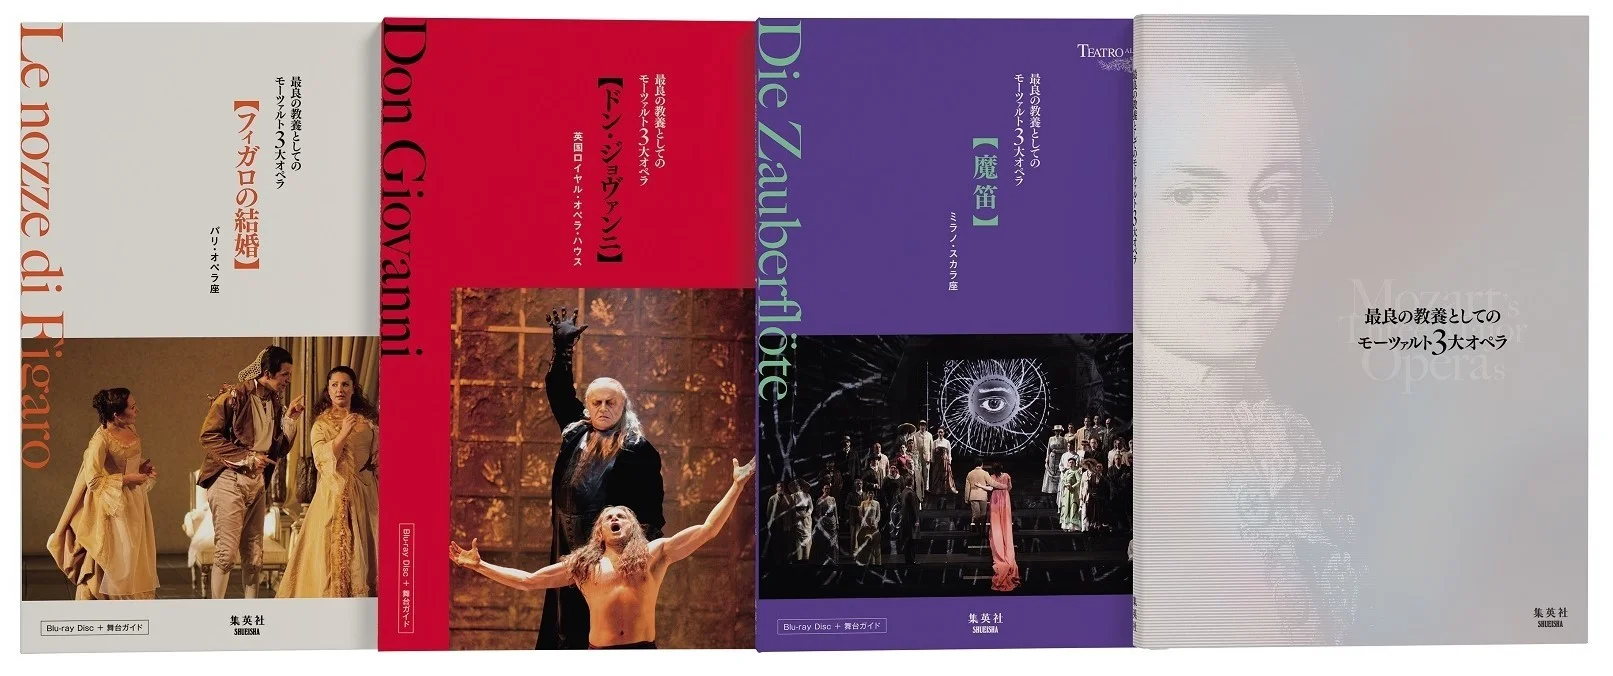 モーツァルト3大オペラ『フィガロの結婚』『ドン・ジョヴァンニ』『魔笛』